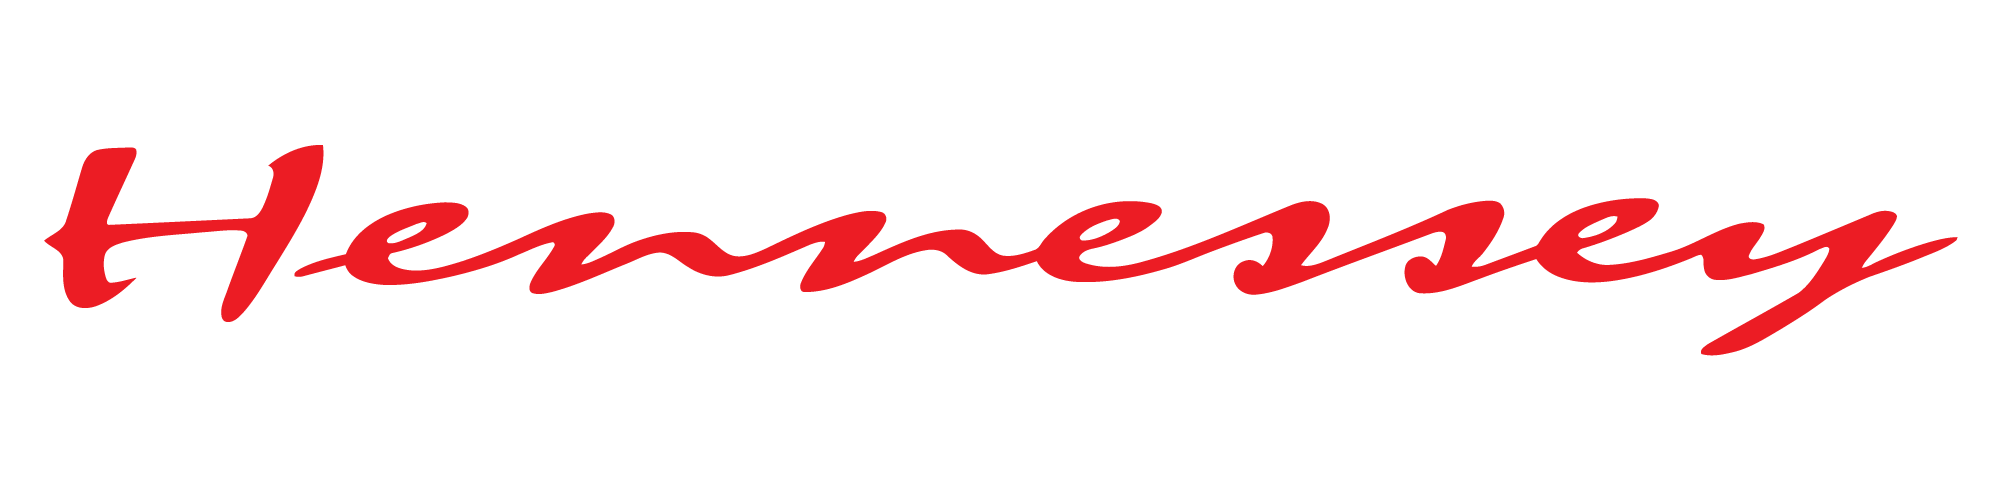 Hennessy Logo